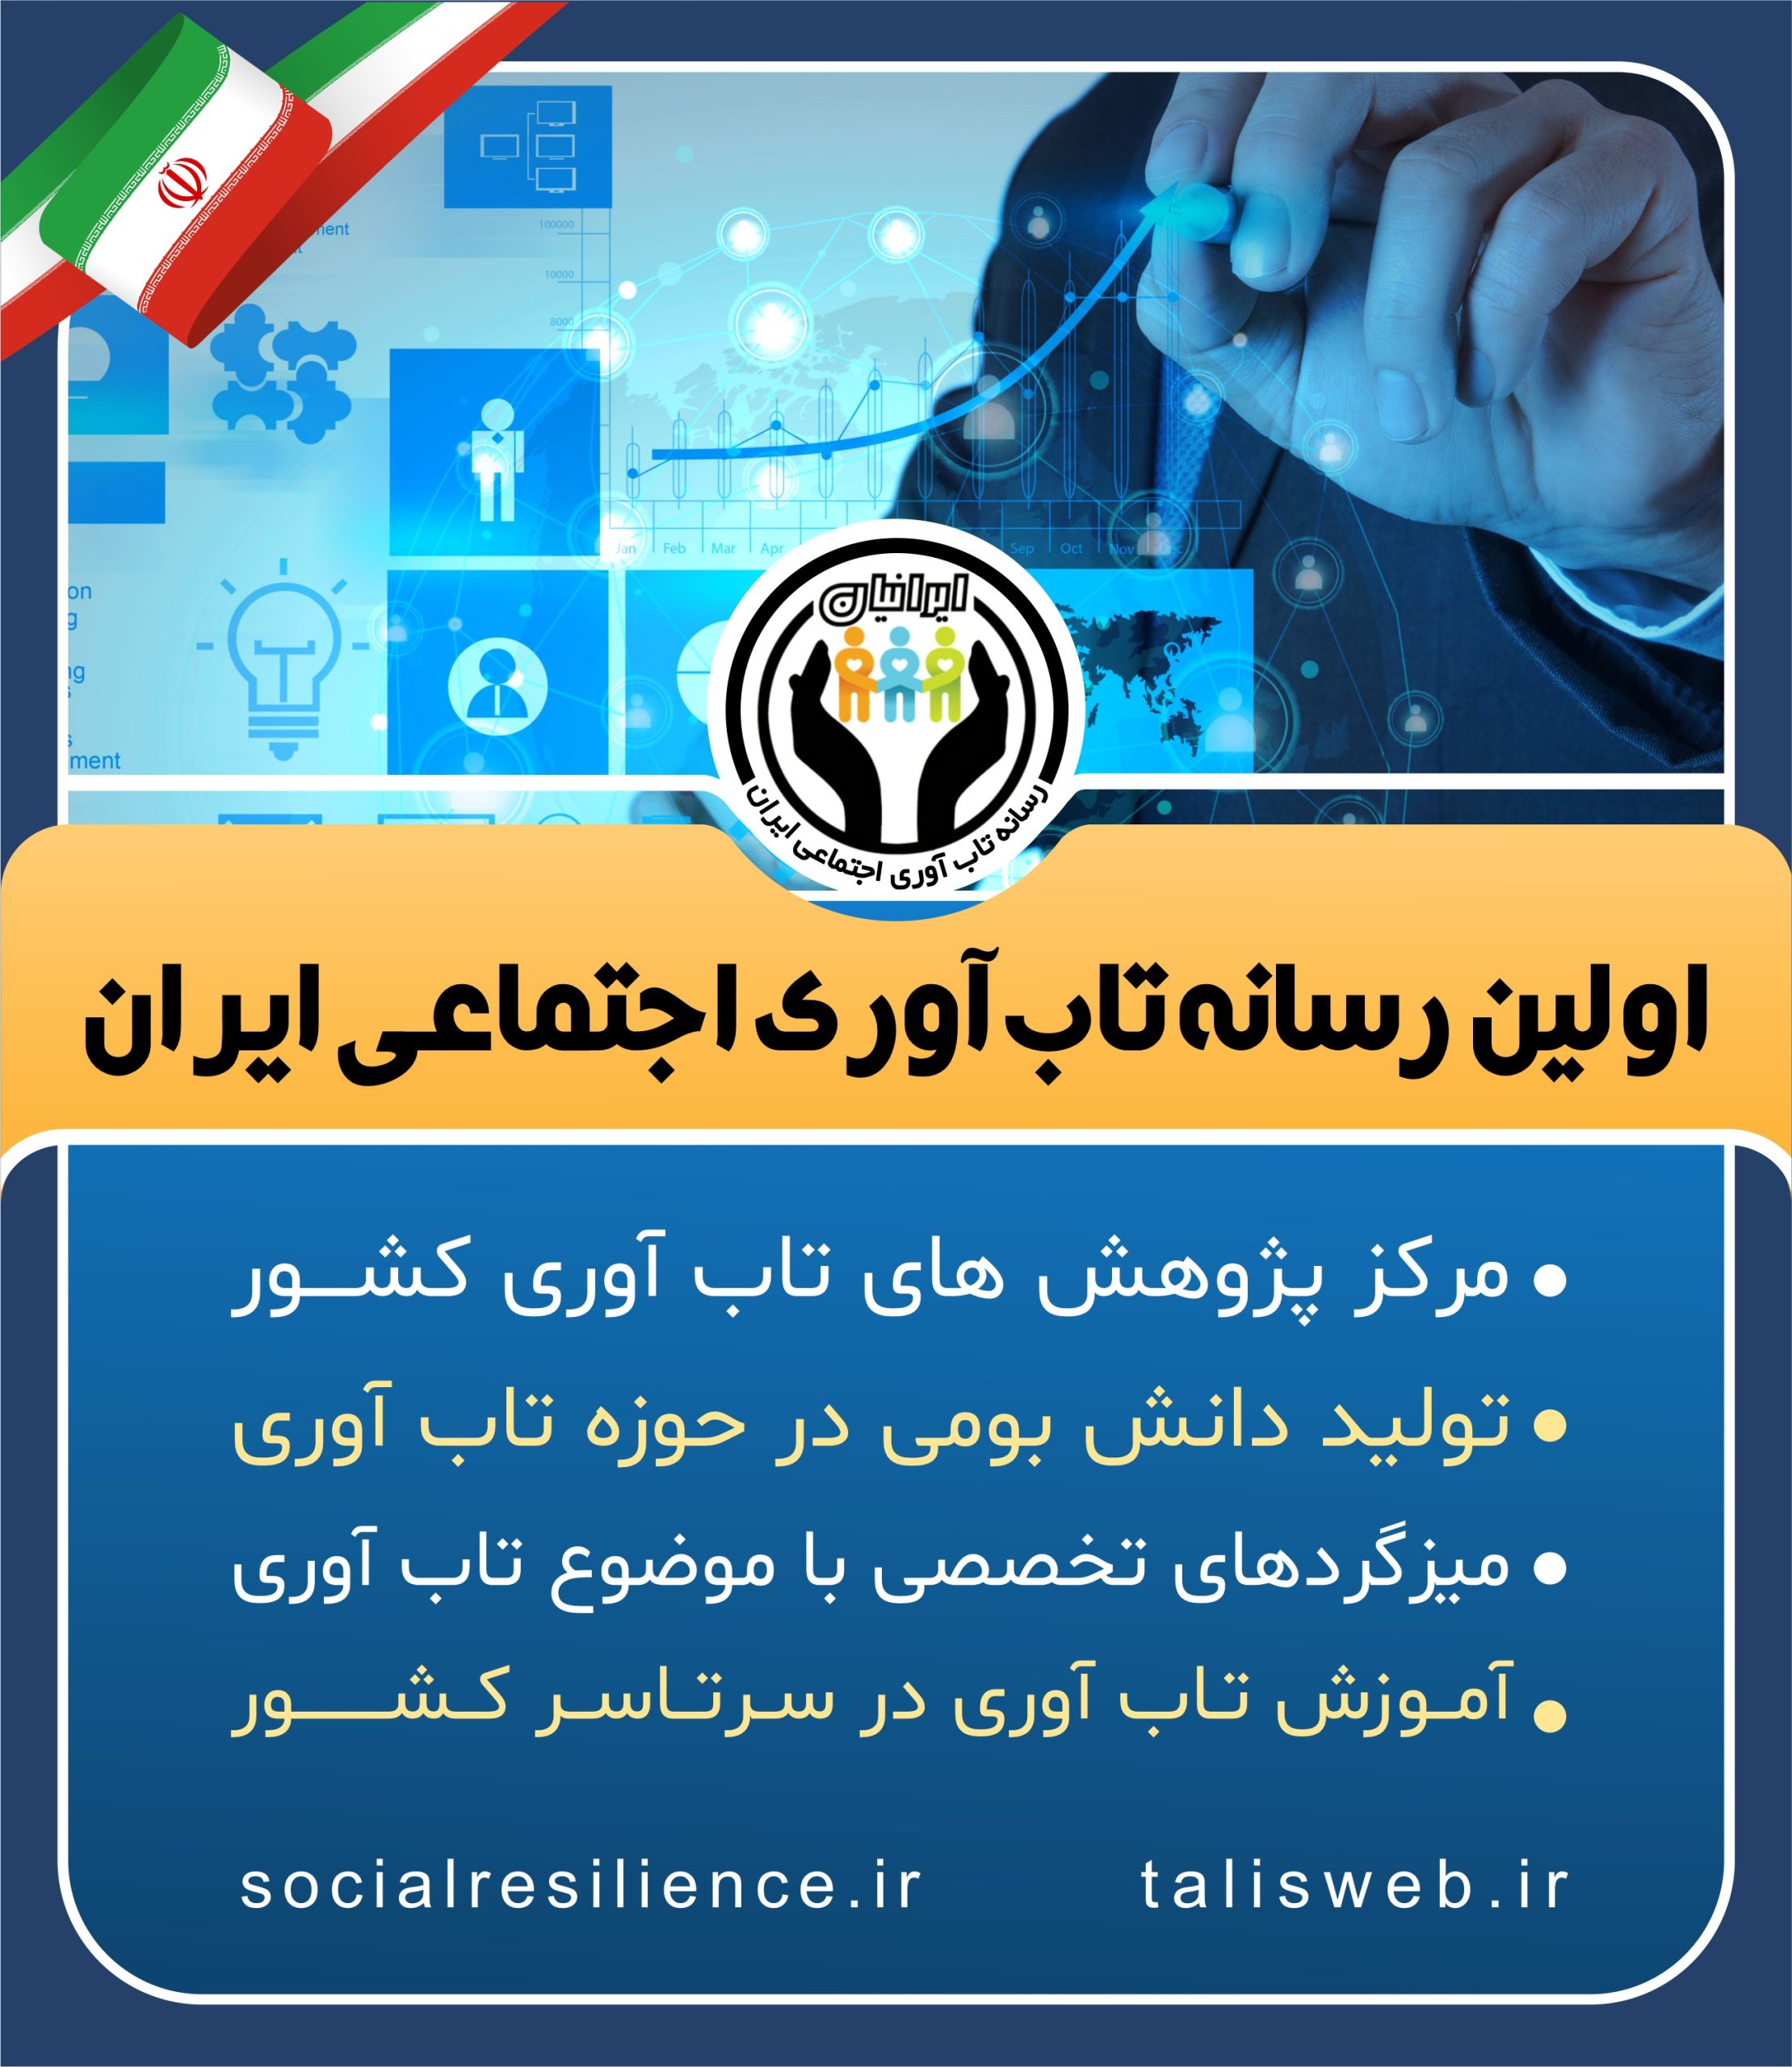 اولین رسانه تاب آوری اجتماعی ایران؛ اطلس فارسی تاب آوری کشور